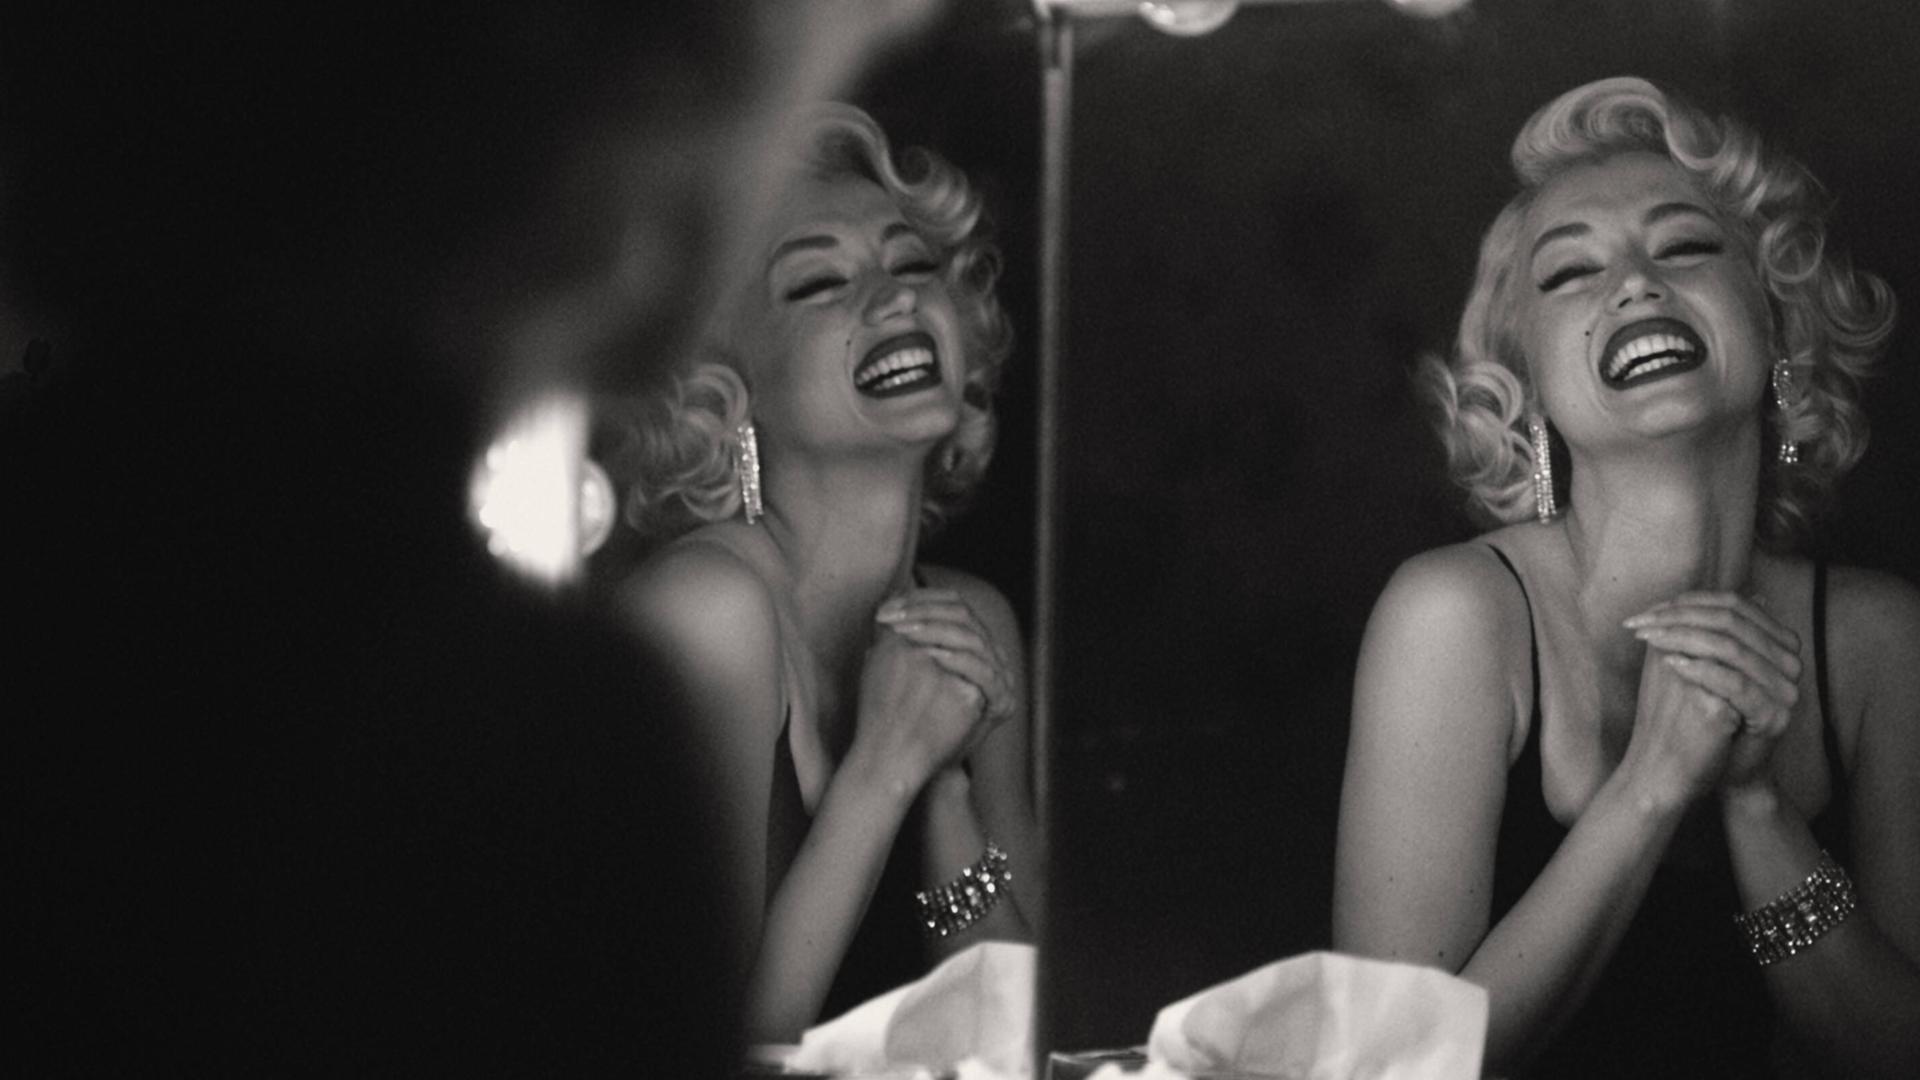 Szene aus dem Film "Blonde" von Andrew Dominik über Marilyn Monroe.